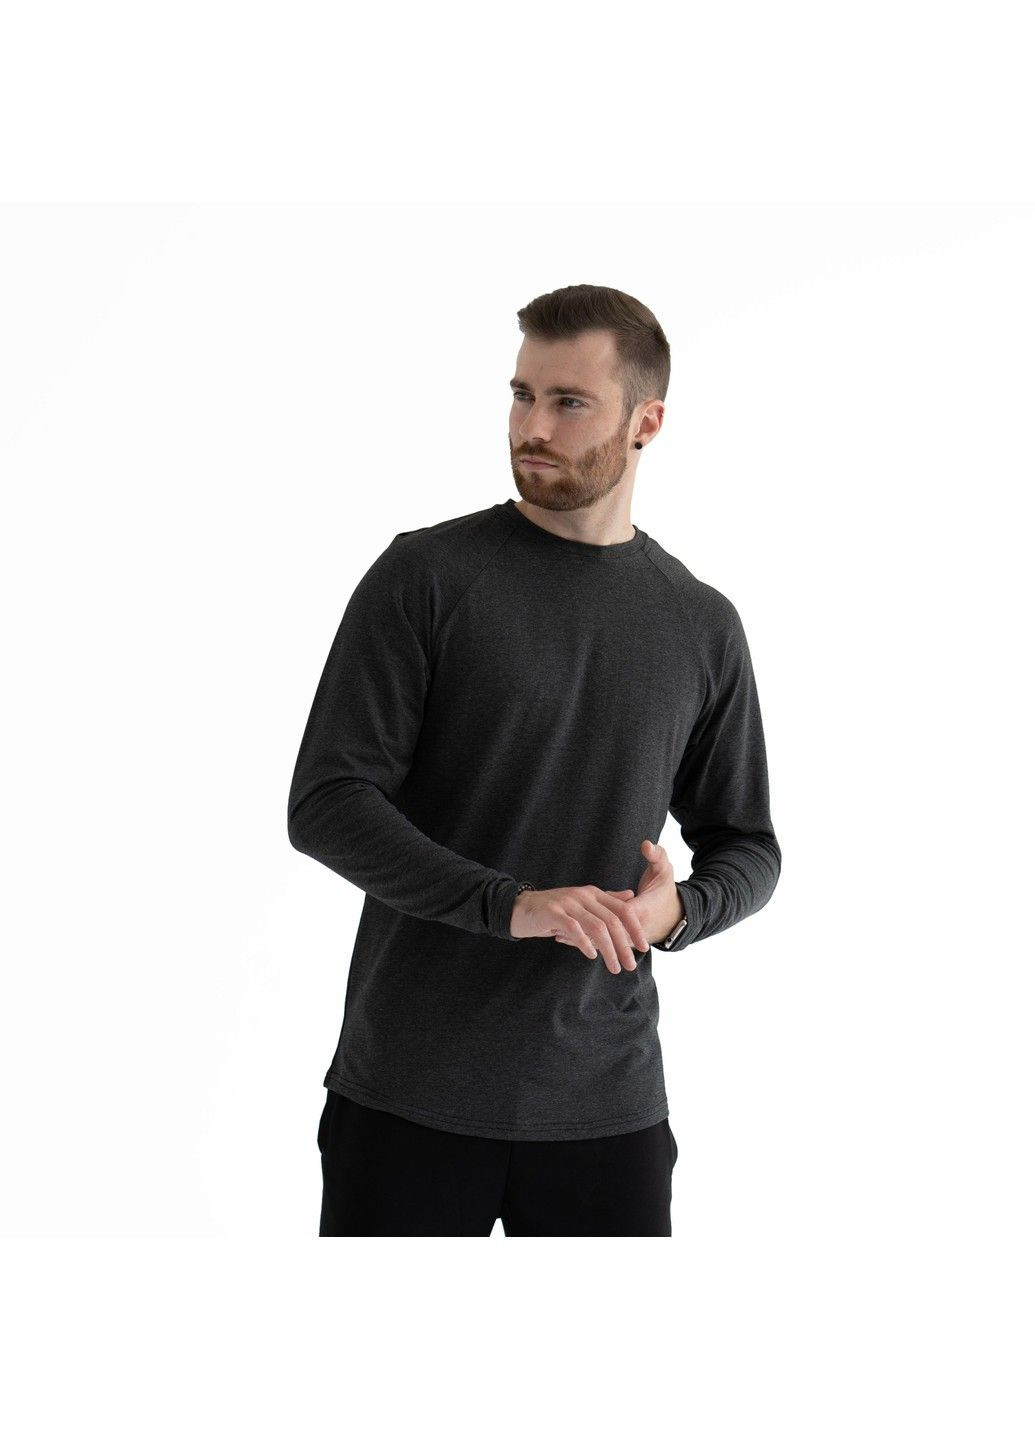 Темно-серая мужская футболка с длинными рукавами long slive темно-серая Teamv